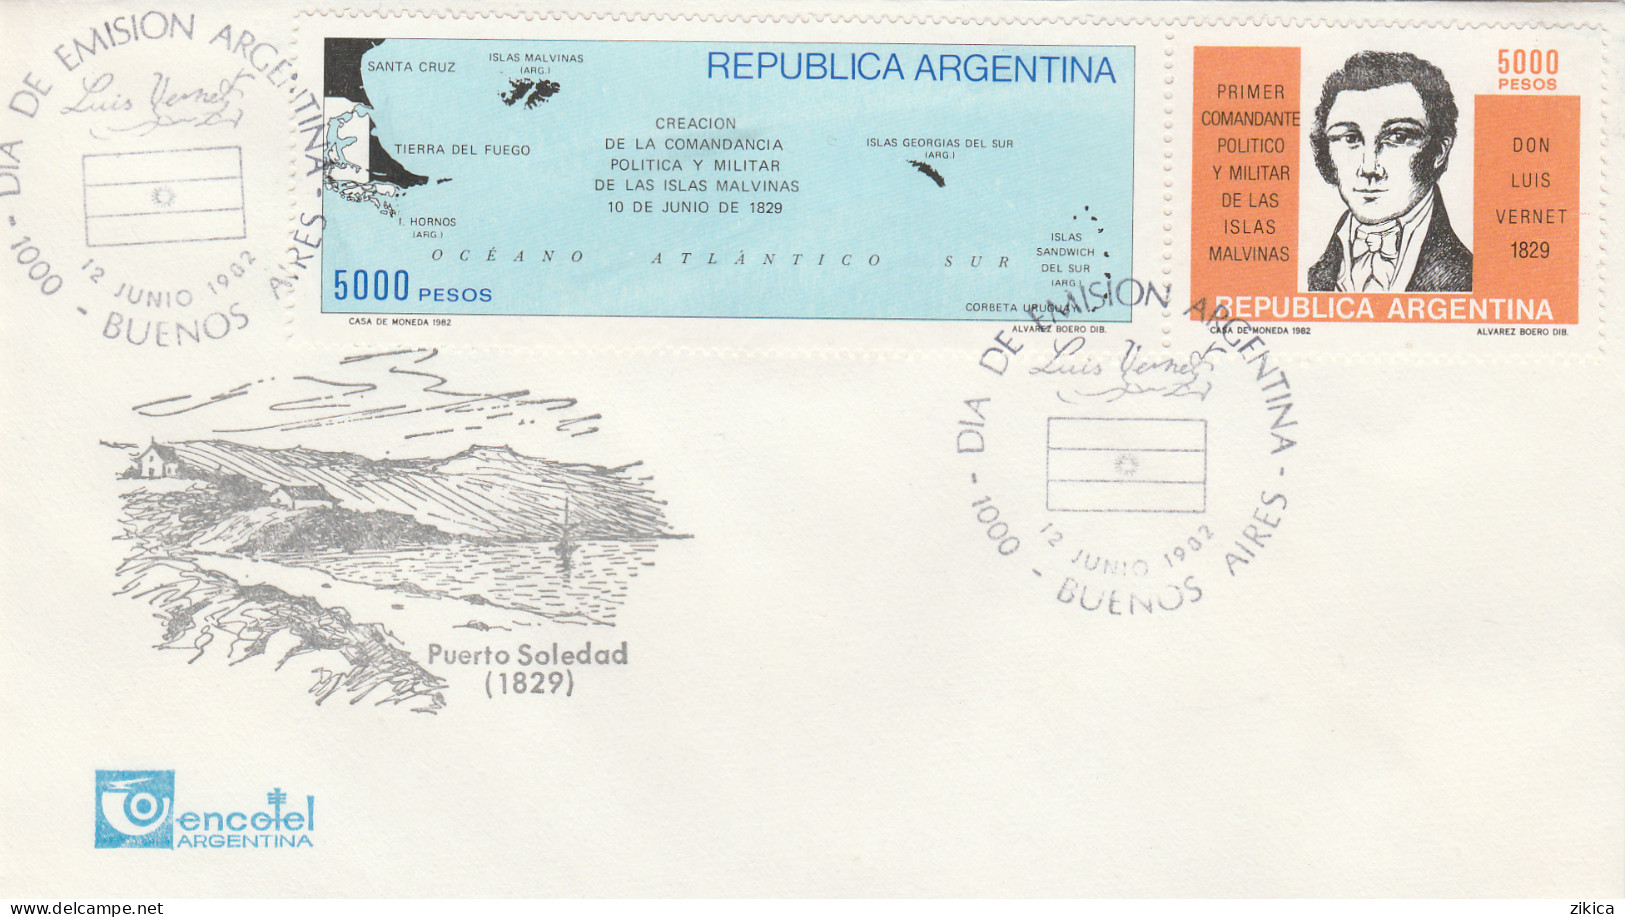 Argentina / Islas Malvinas / Falkland Islands / Antartica - 1982,cover - Covers & Documents